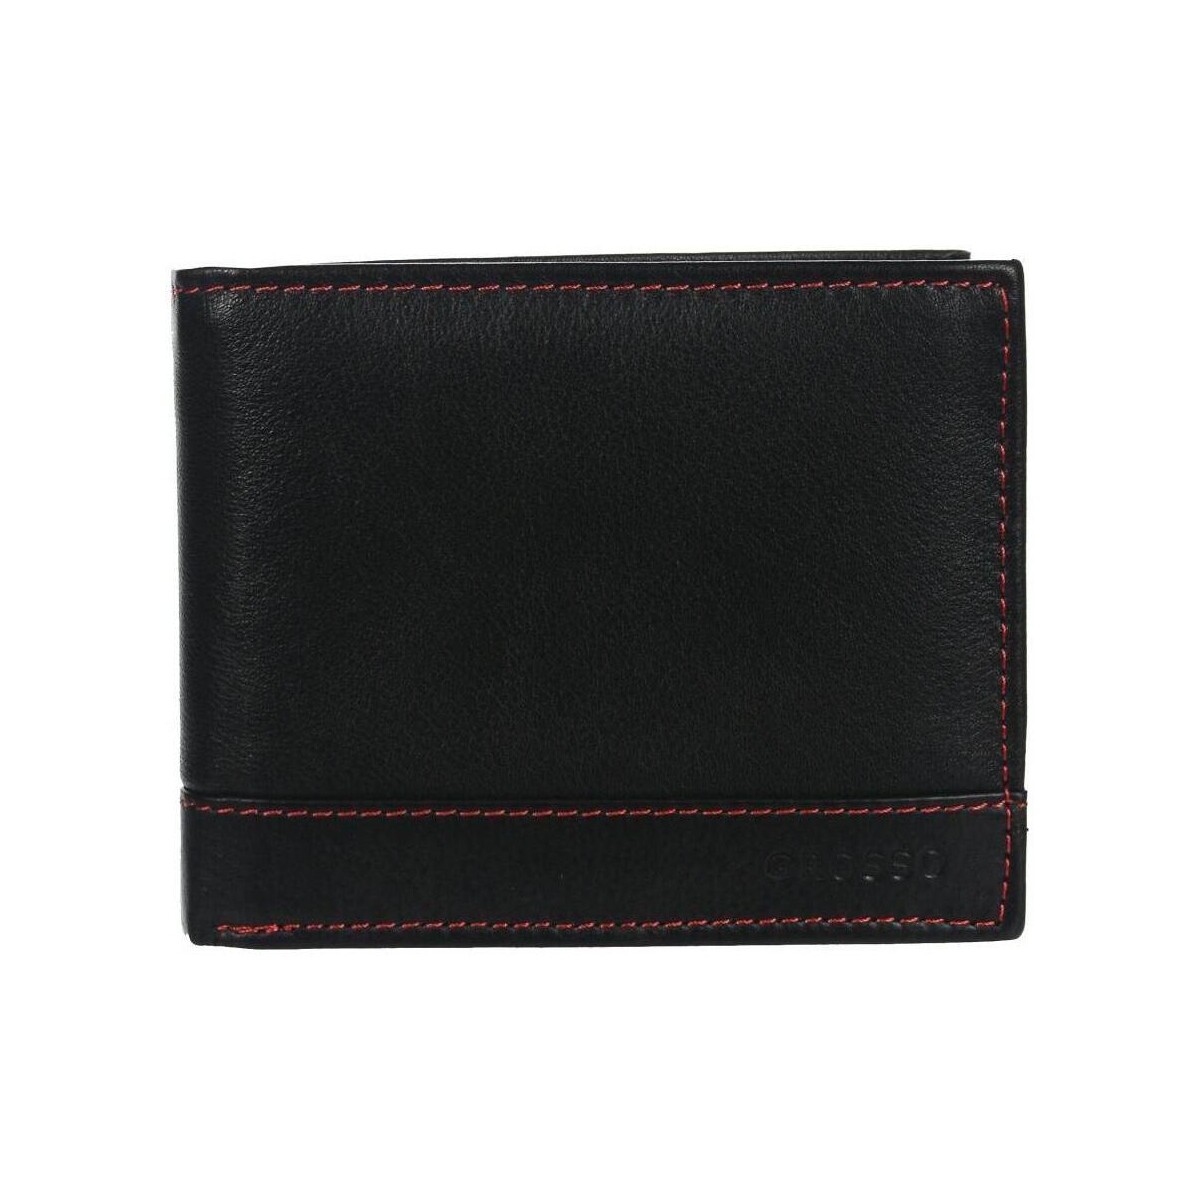 Taška Muži Náprsní tašky Grosso Kožená černá pánská peněženka s červenou nití v krabičce Černá